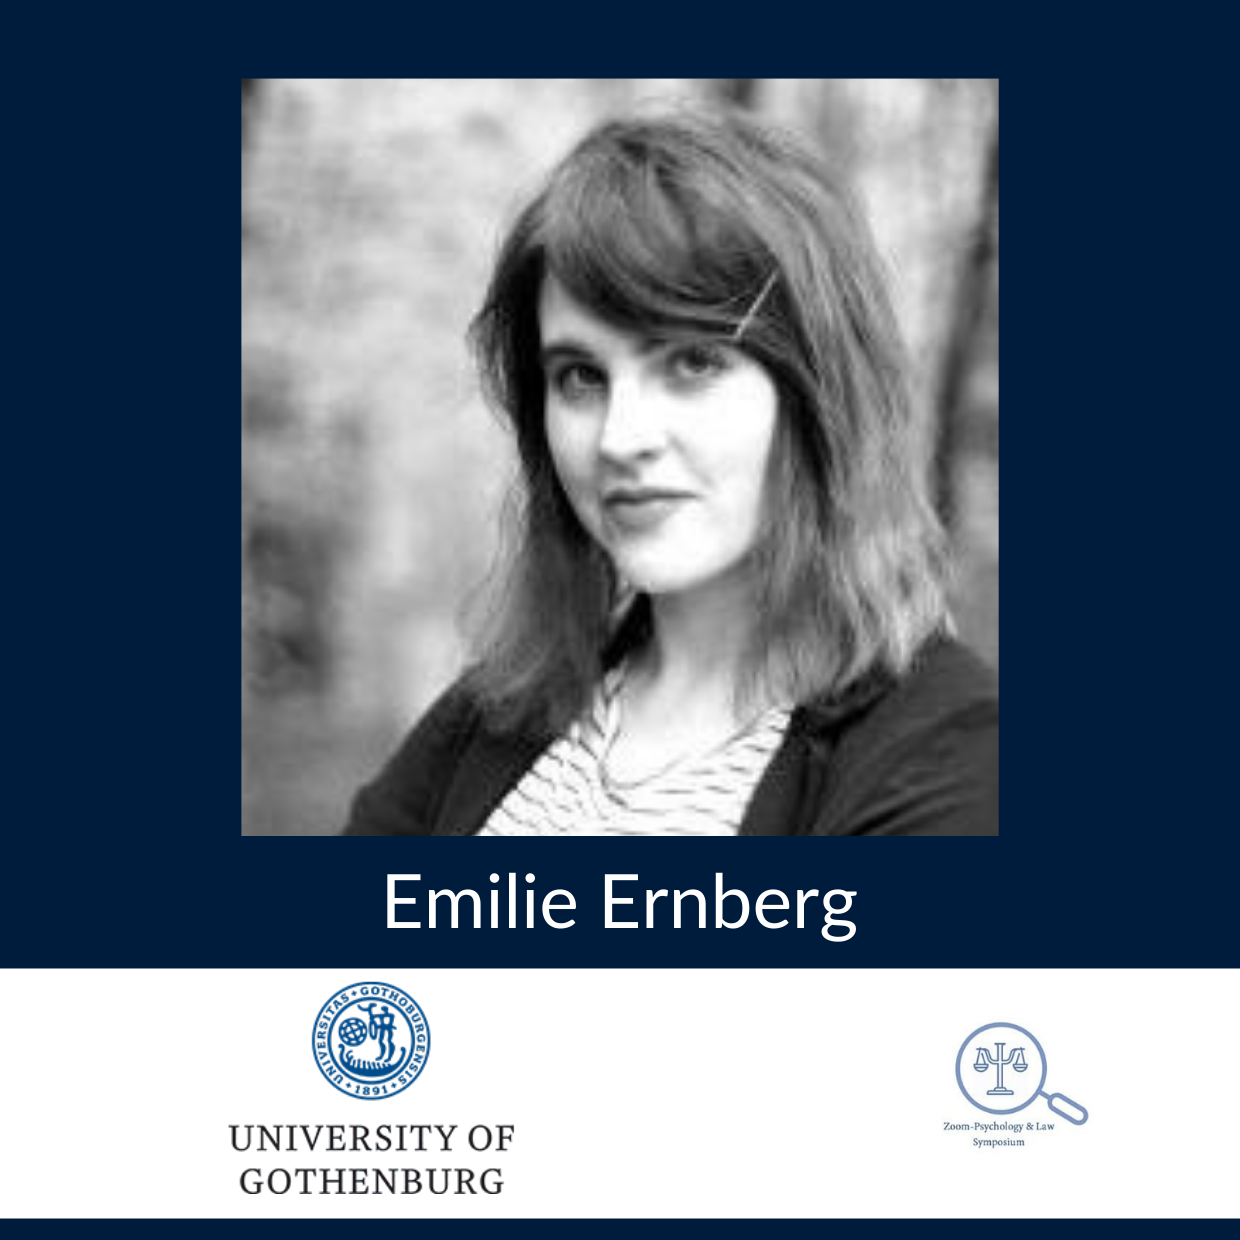 Emilie Ernberg